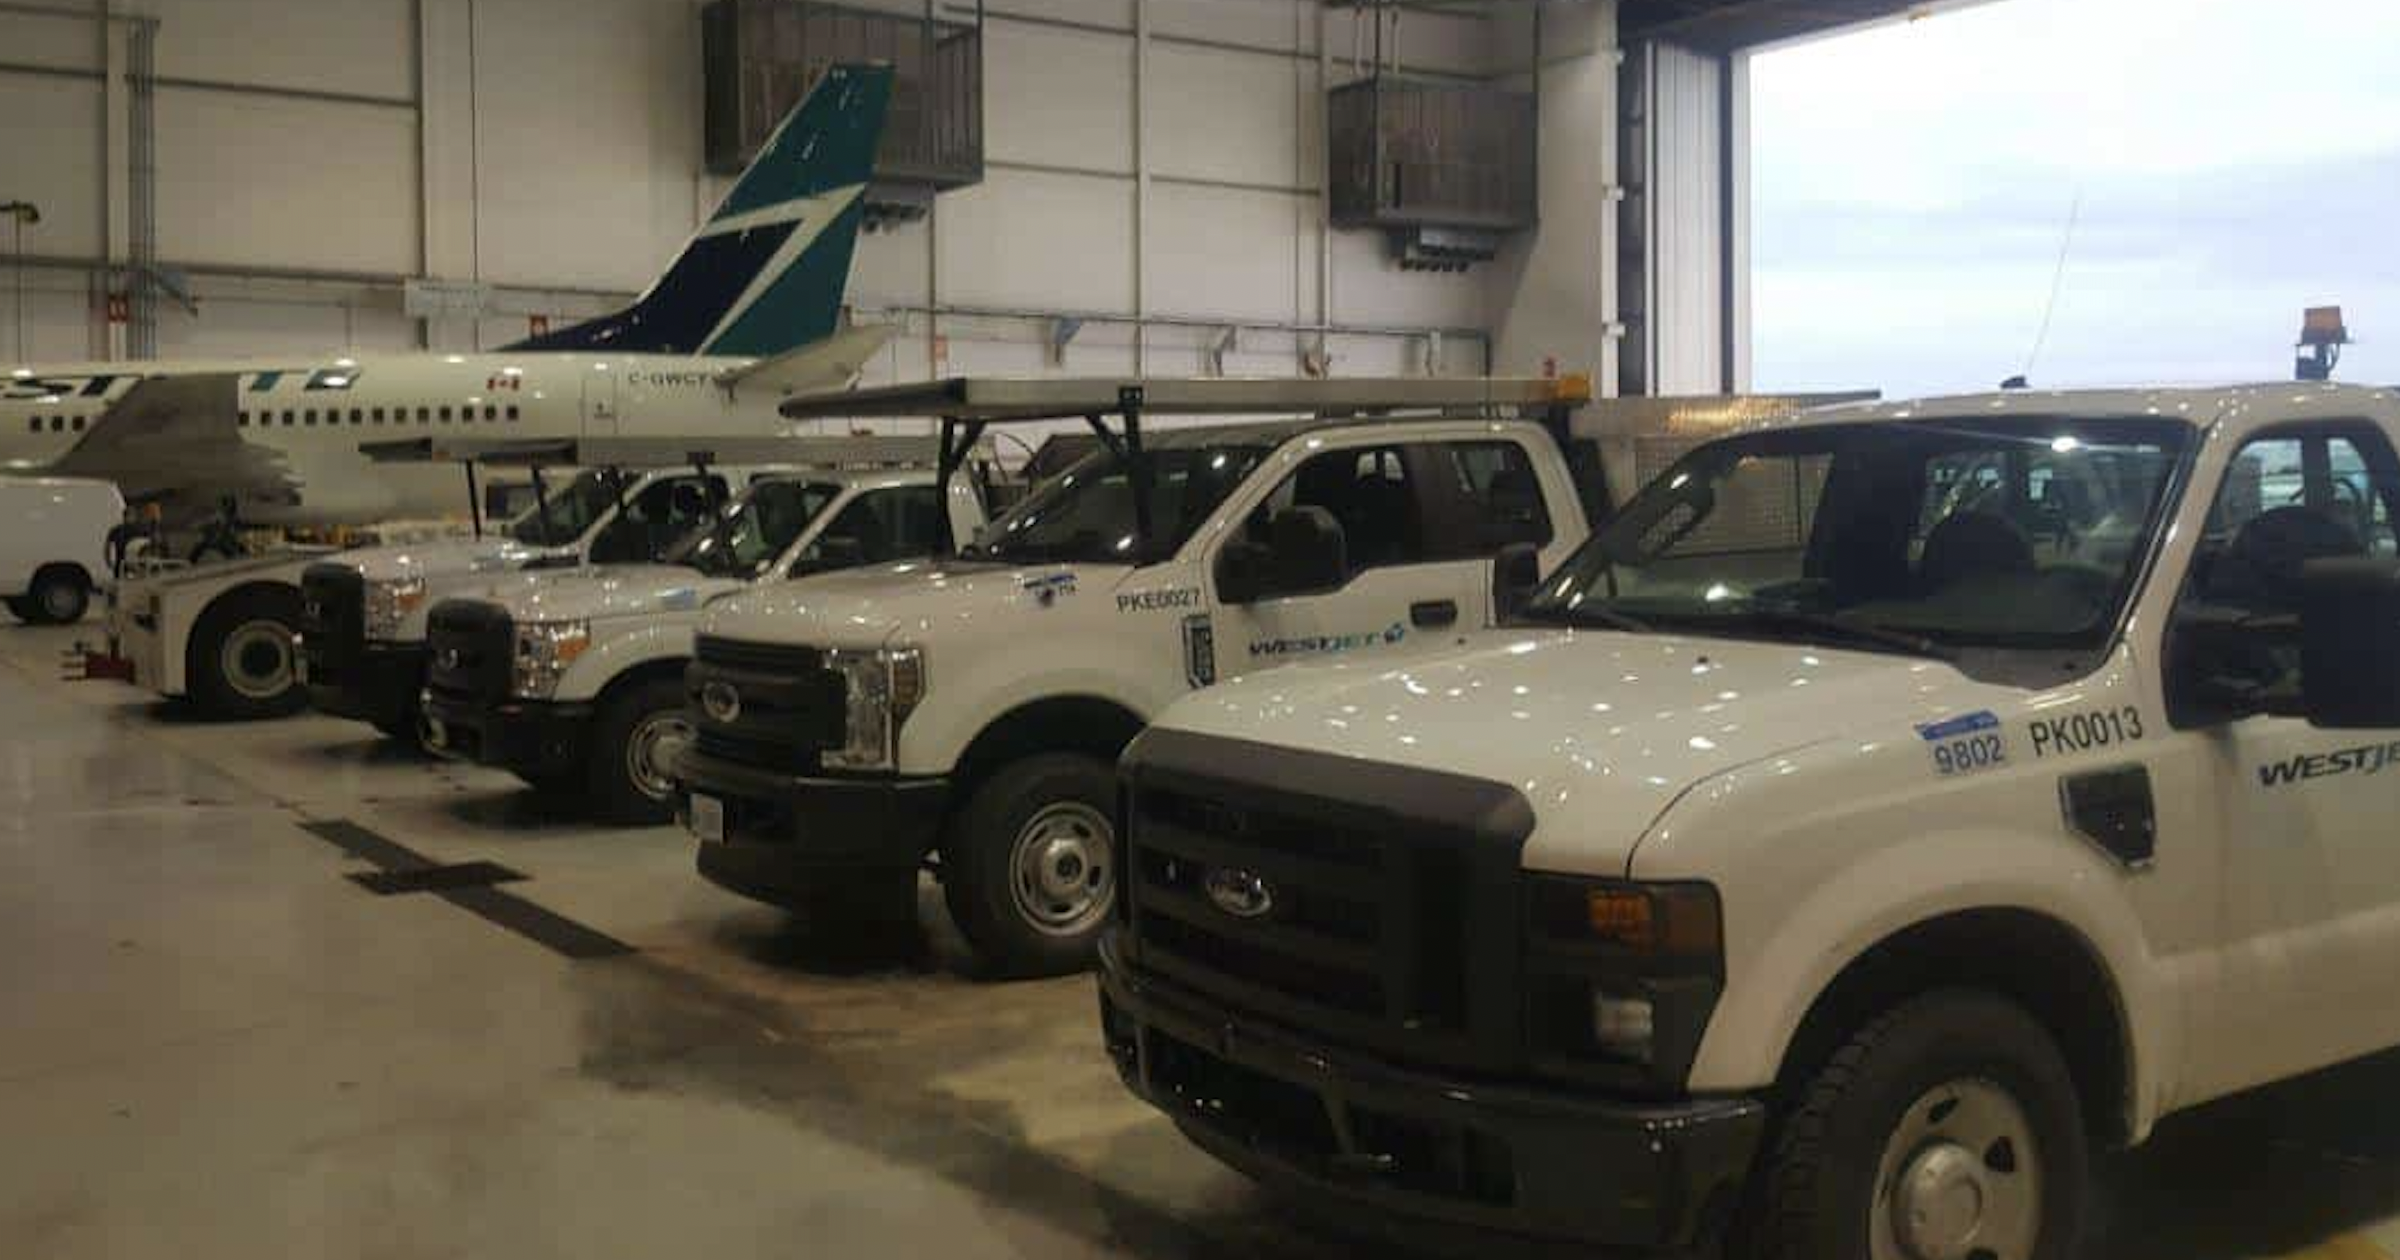 You are currently viewing 10 photos de ma visite d’un hangar WestJet à Toronto